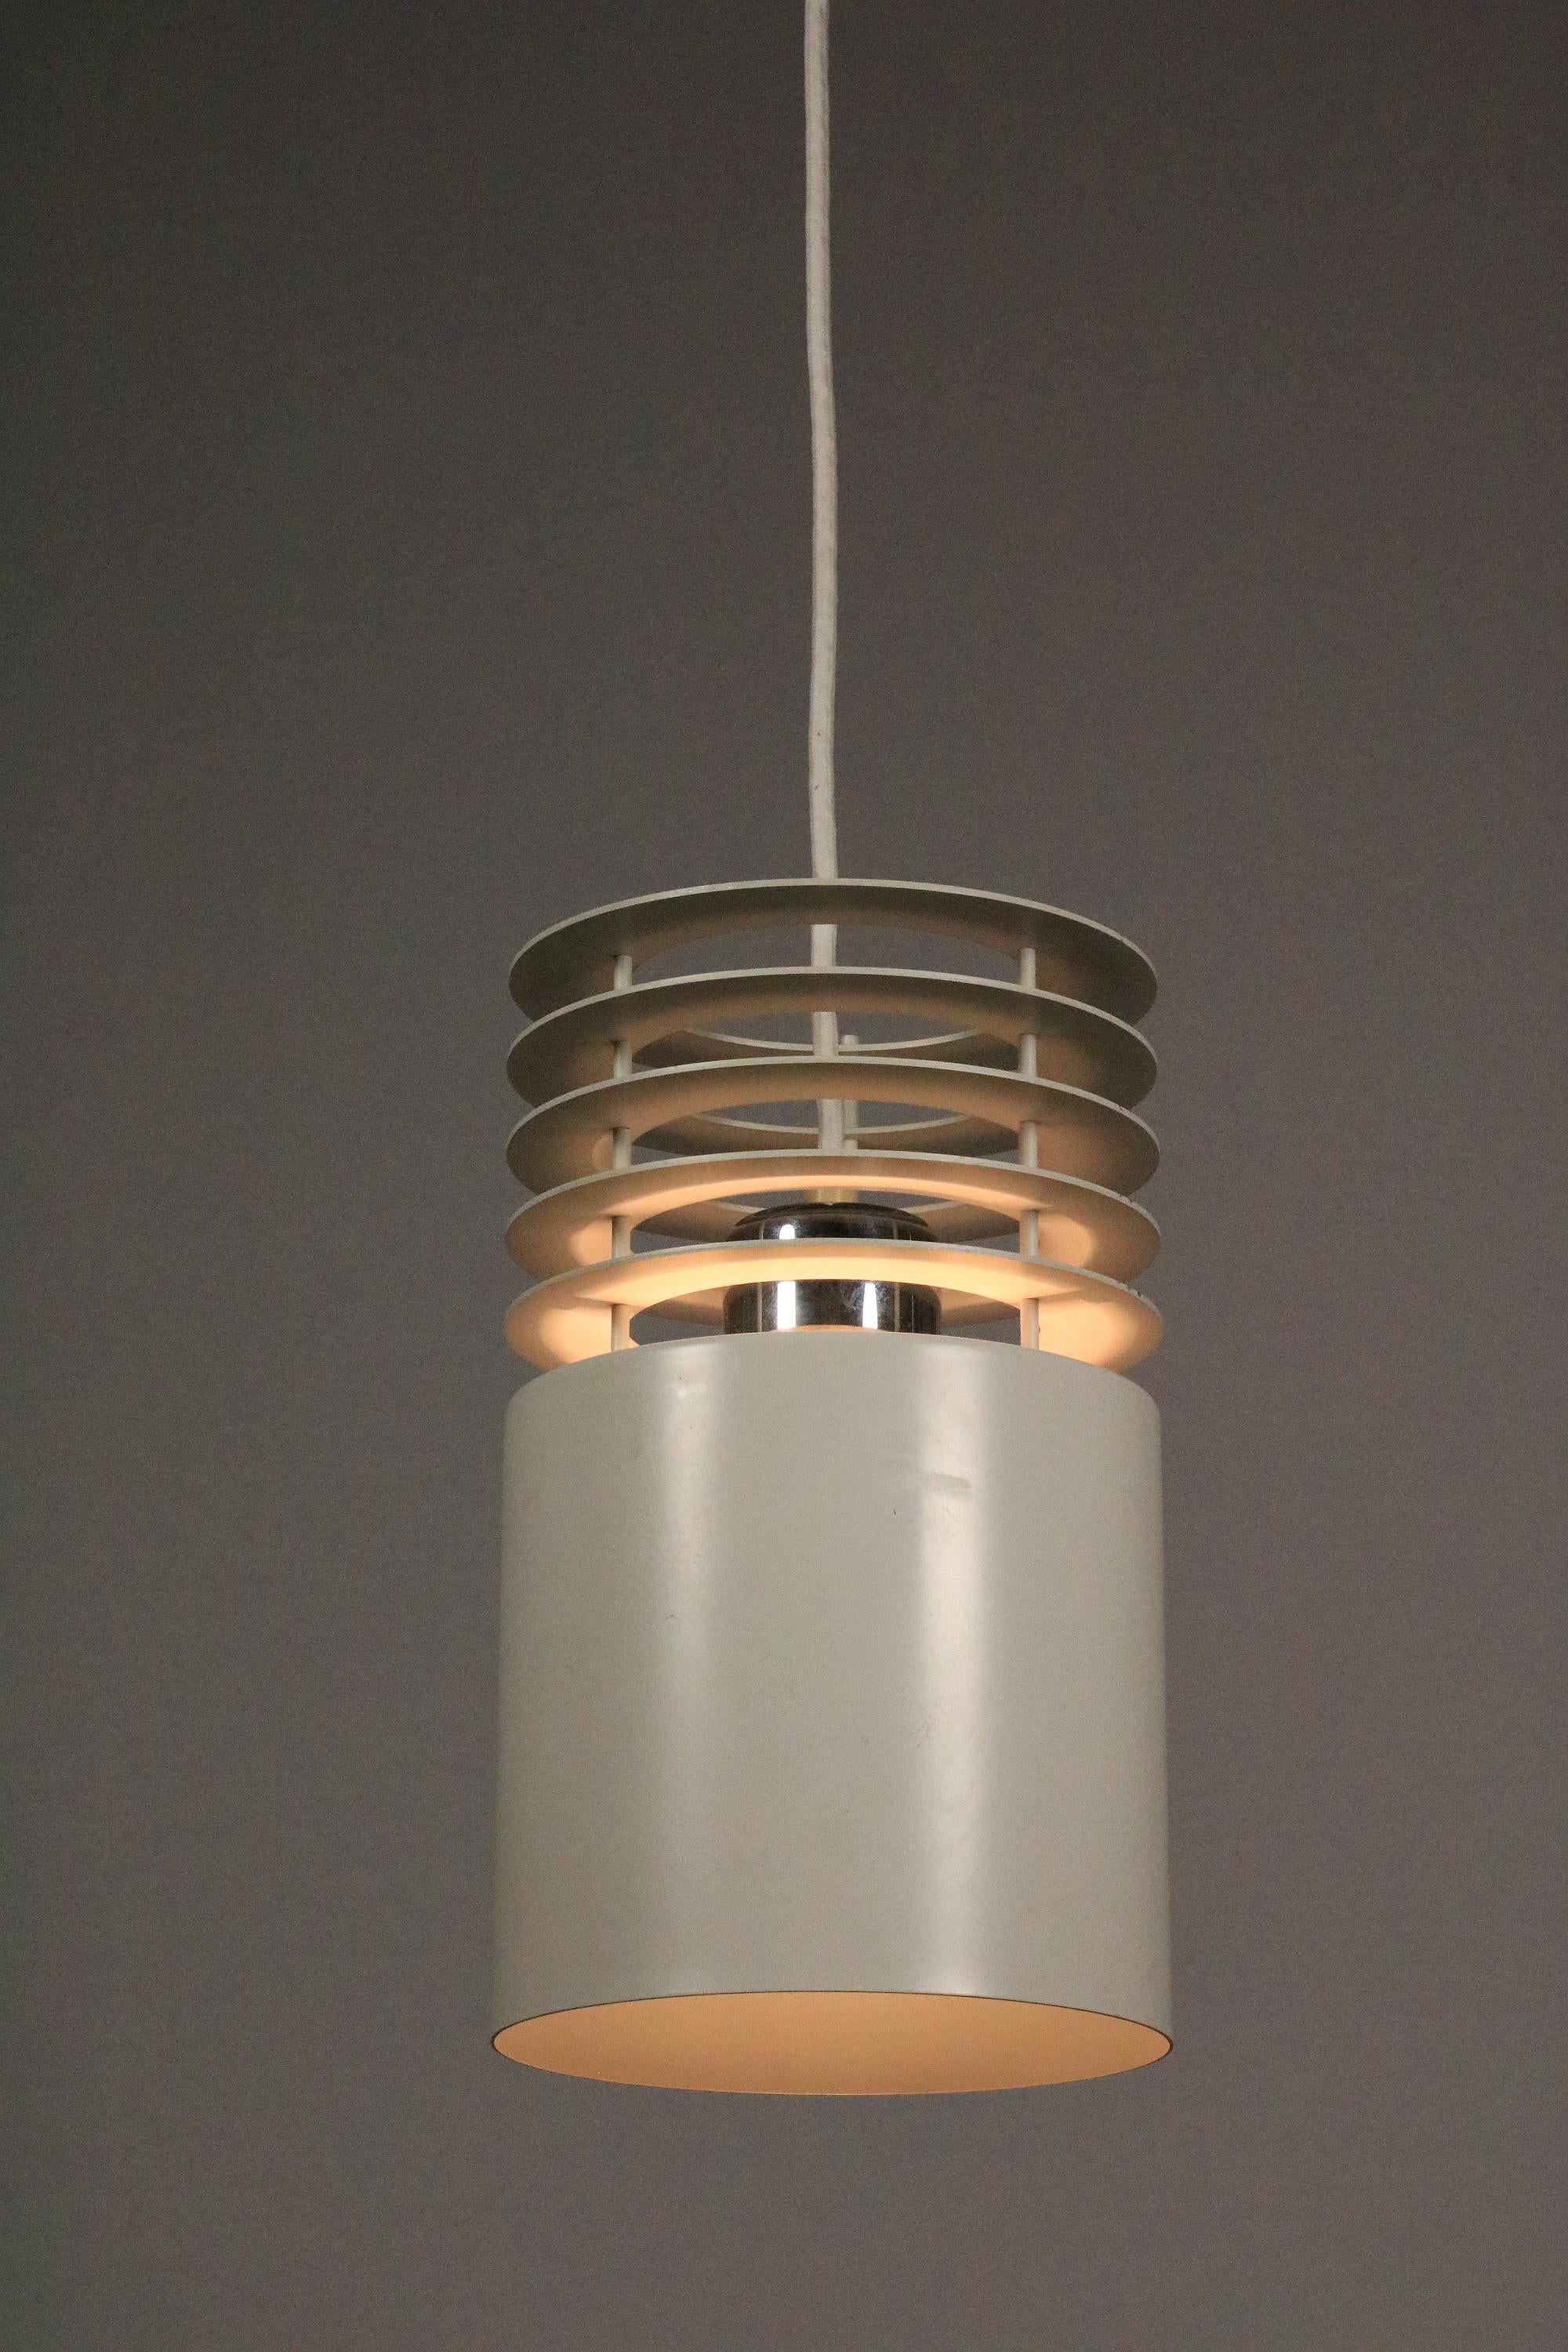 Scandinavian Modern Pendant Lamp by Jo Hammerborg for Fog and Mørup, Model Hydra 1, 1970s For Sale